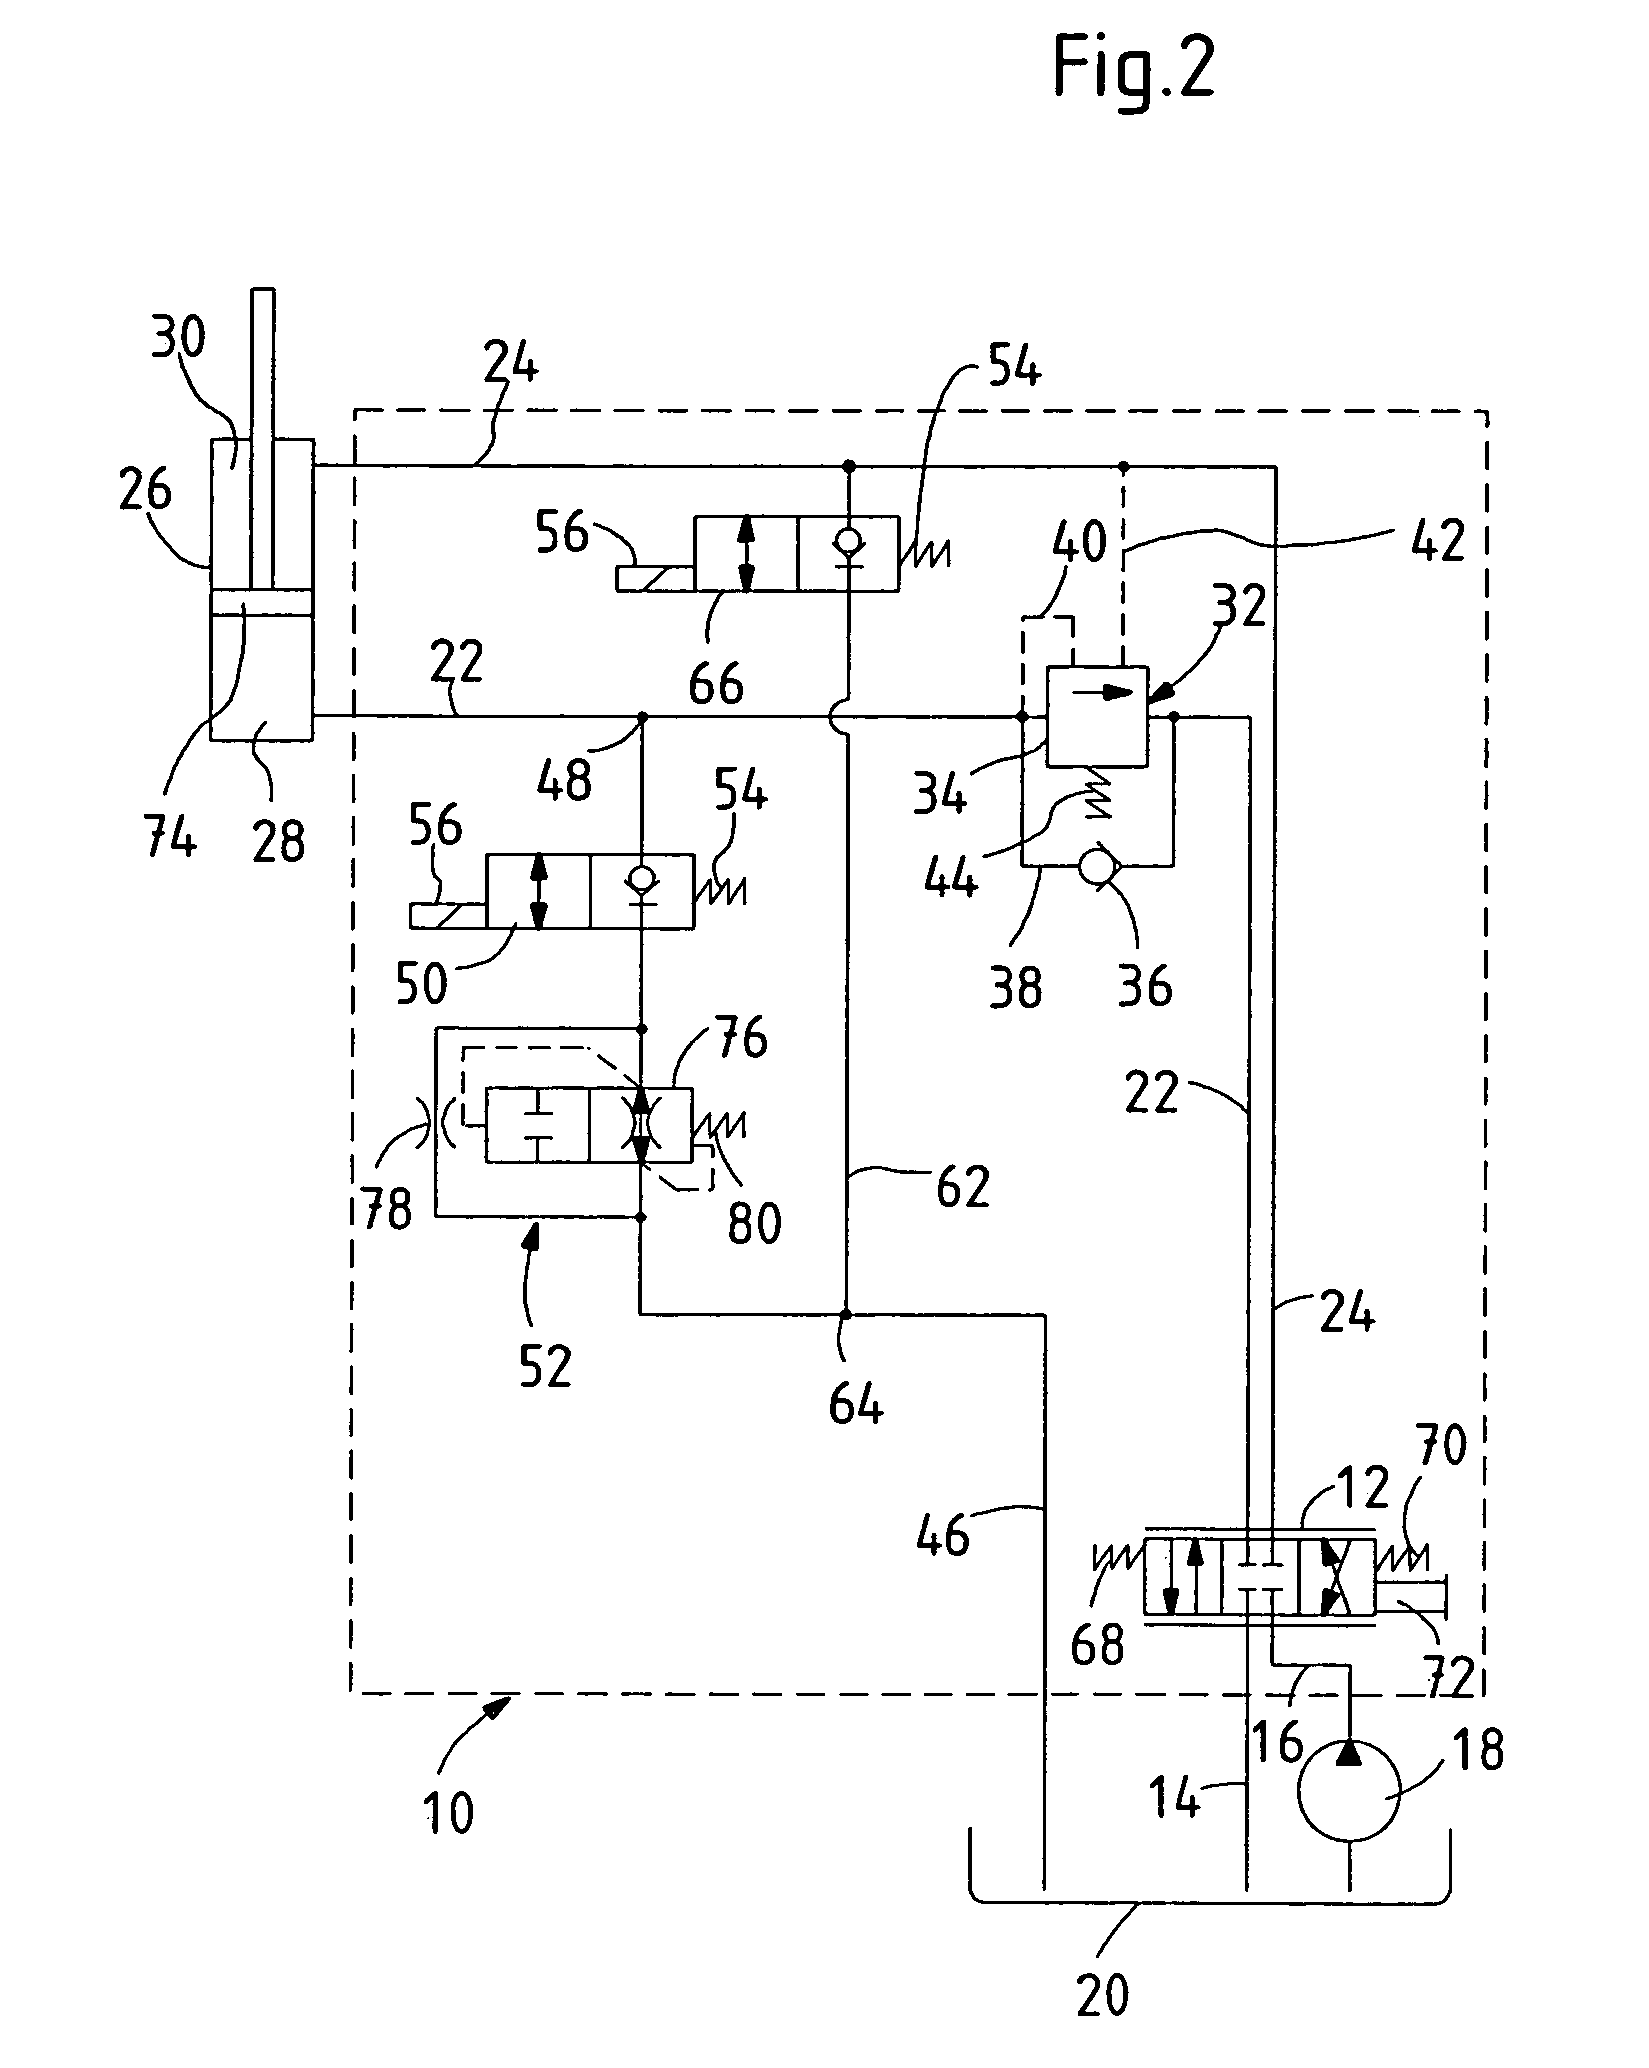 Hydraulic control circuit for a hydraulic lifting cylinder